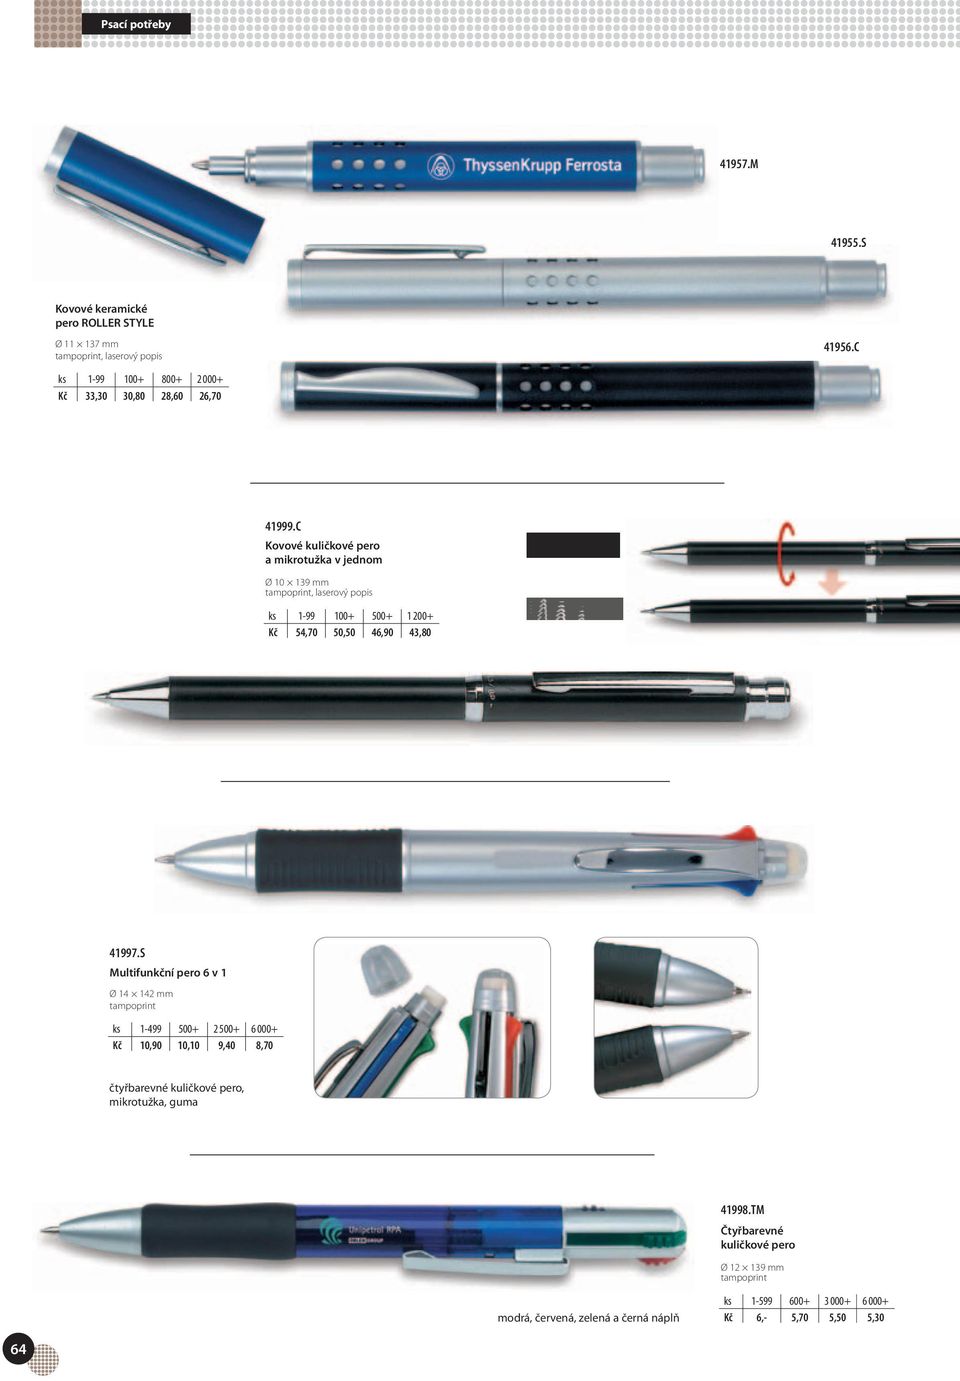 S Multifunkční pero 6 v 1 Ø 14 142 mm ks 1-499 500+ 2 500+ 6 000+ Kč 10,90 10,10 9,40 8,70 čtyřbarevné kuličkové pero,